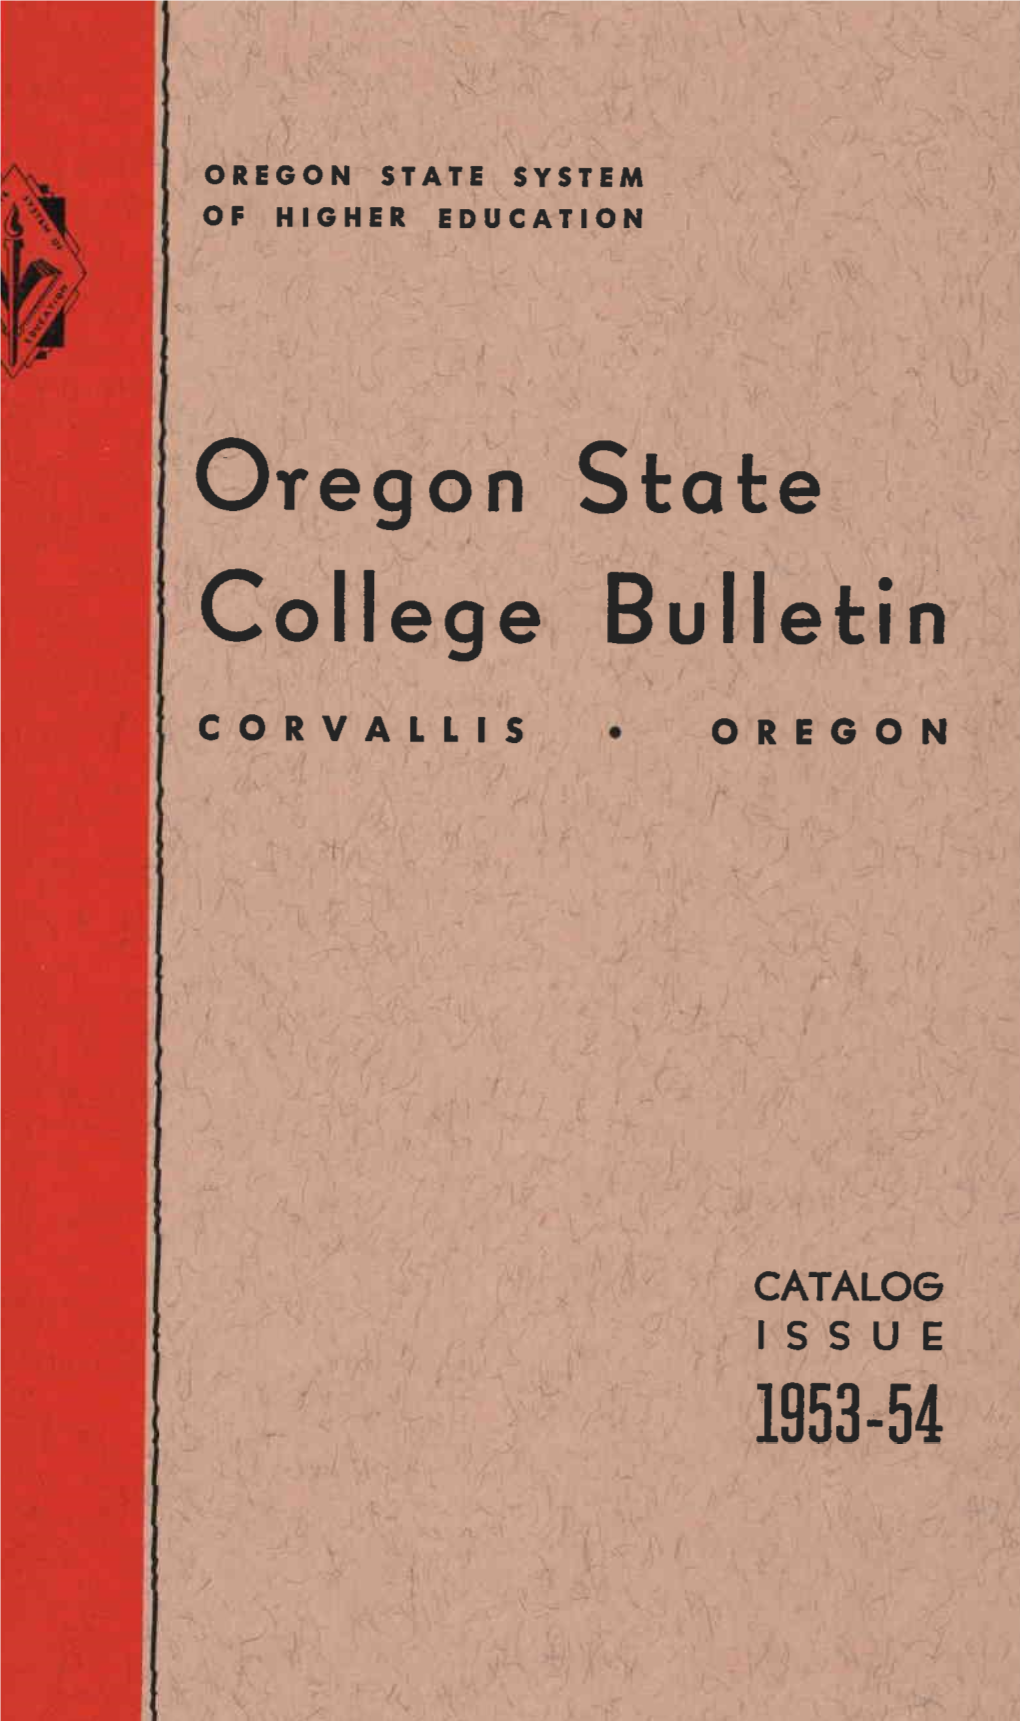 College Bulletin